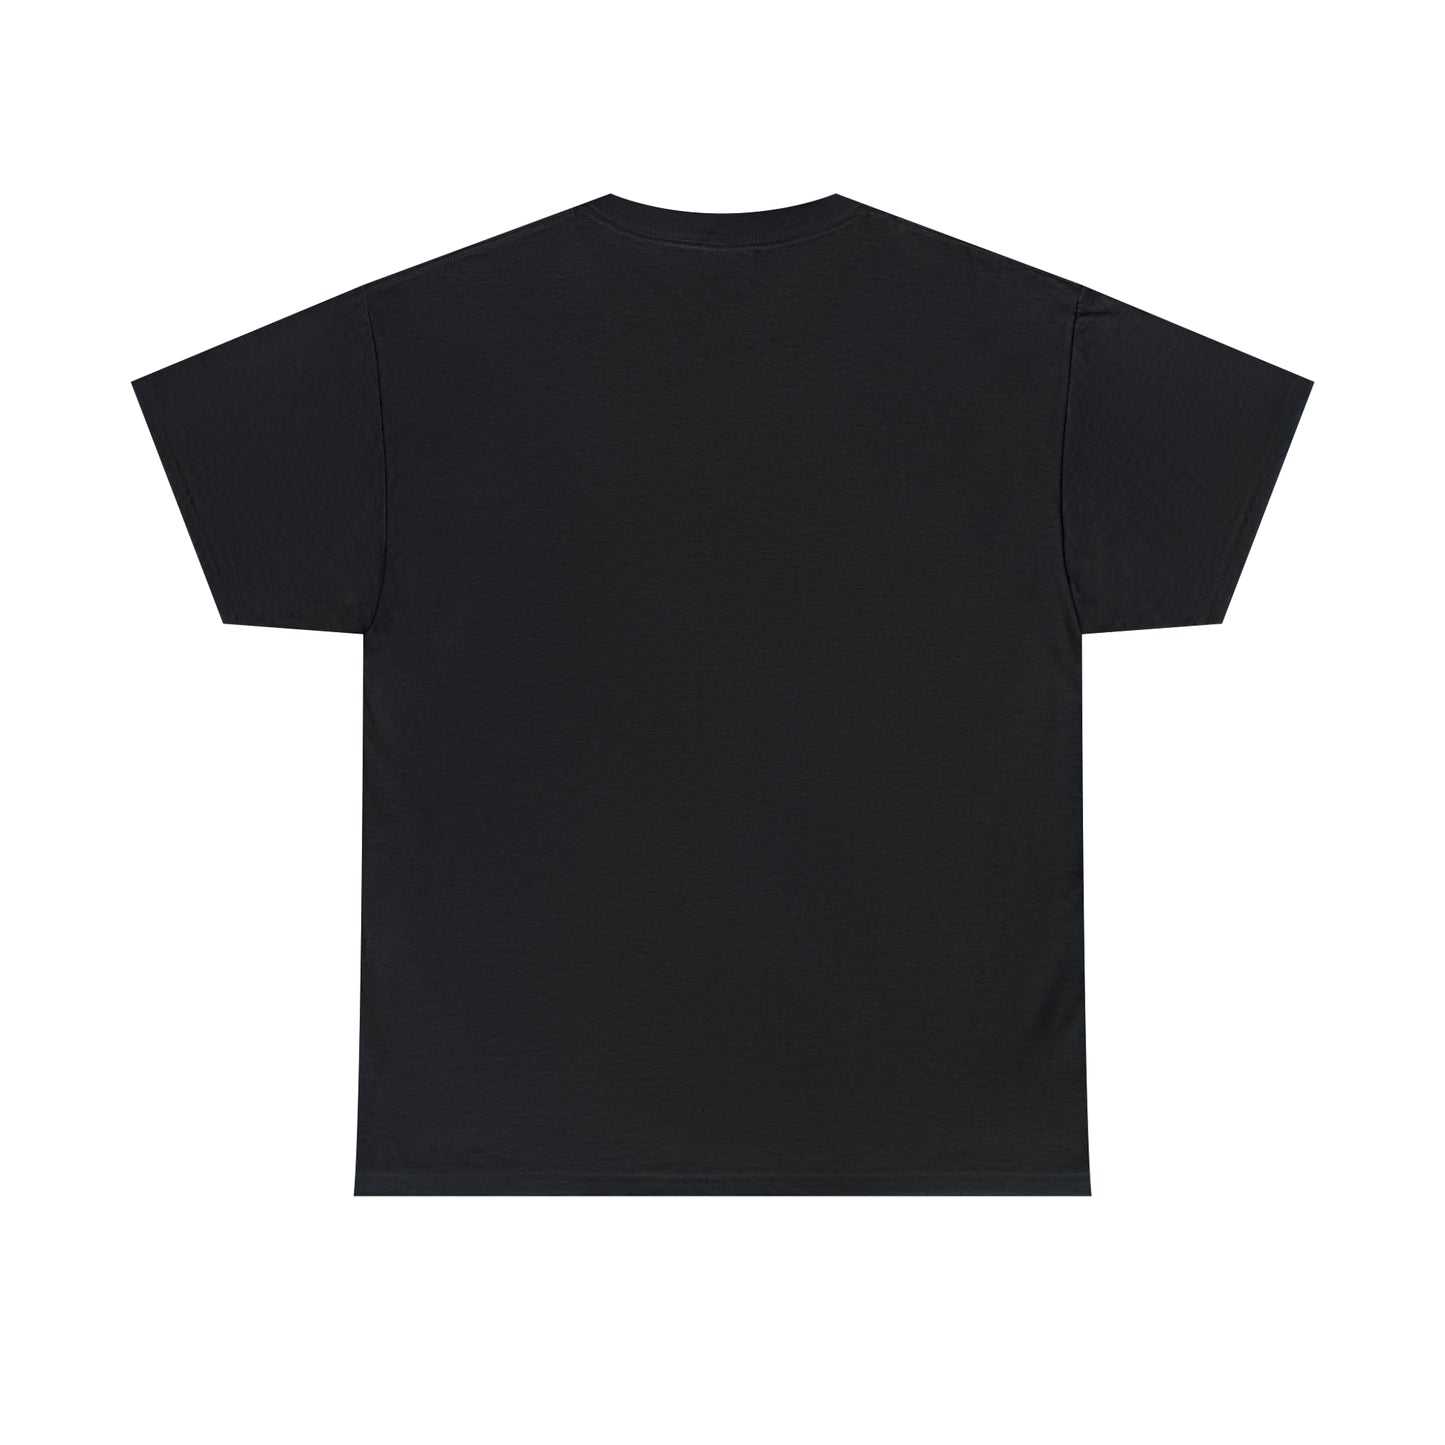 "Tariq" - Unisex Heavy Cotton T-Shirt